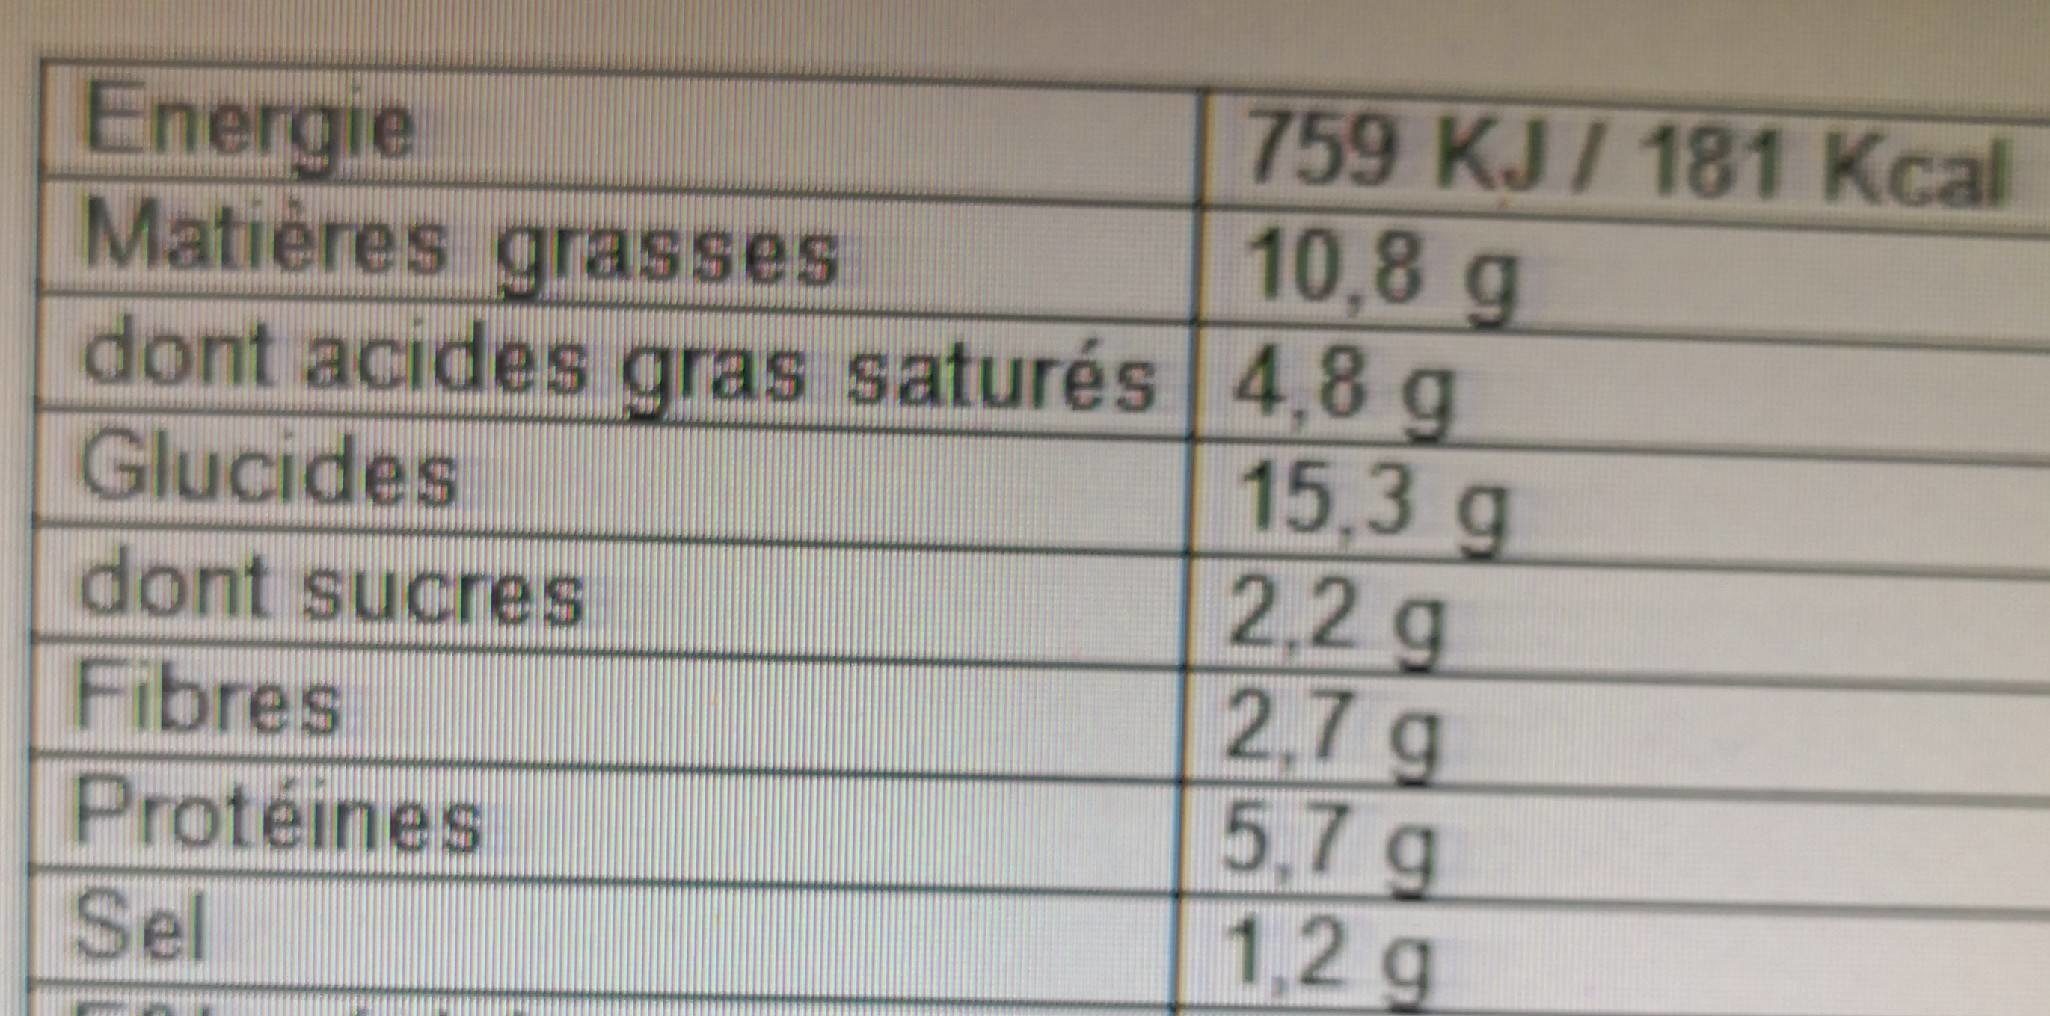 Risotto quinoa aux cèpes - Información nutricional - fr